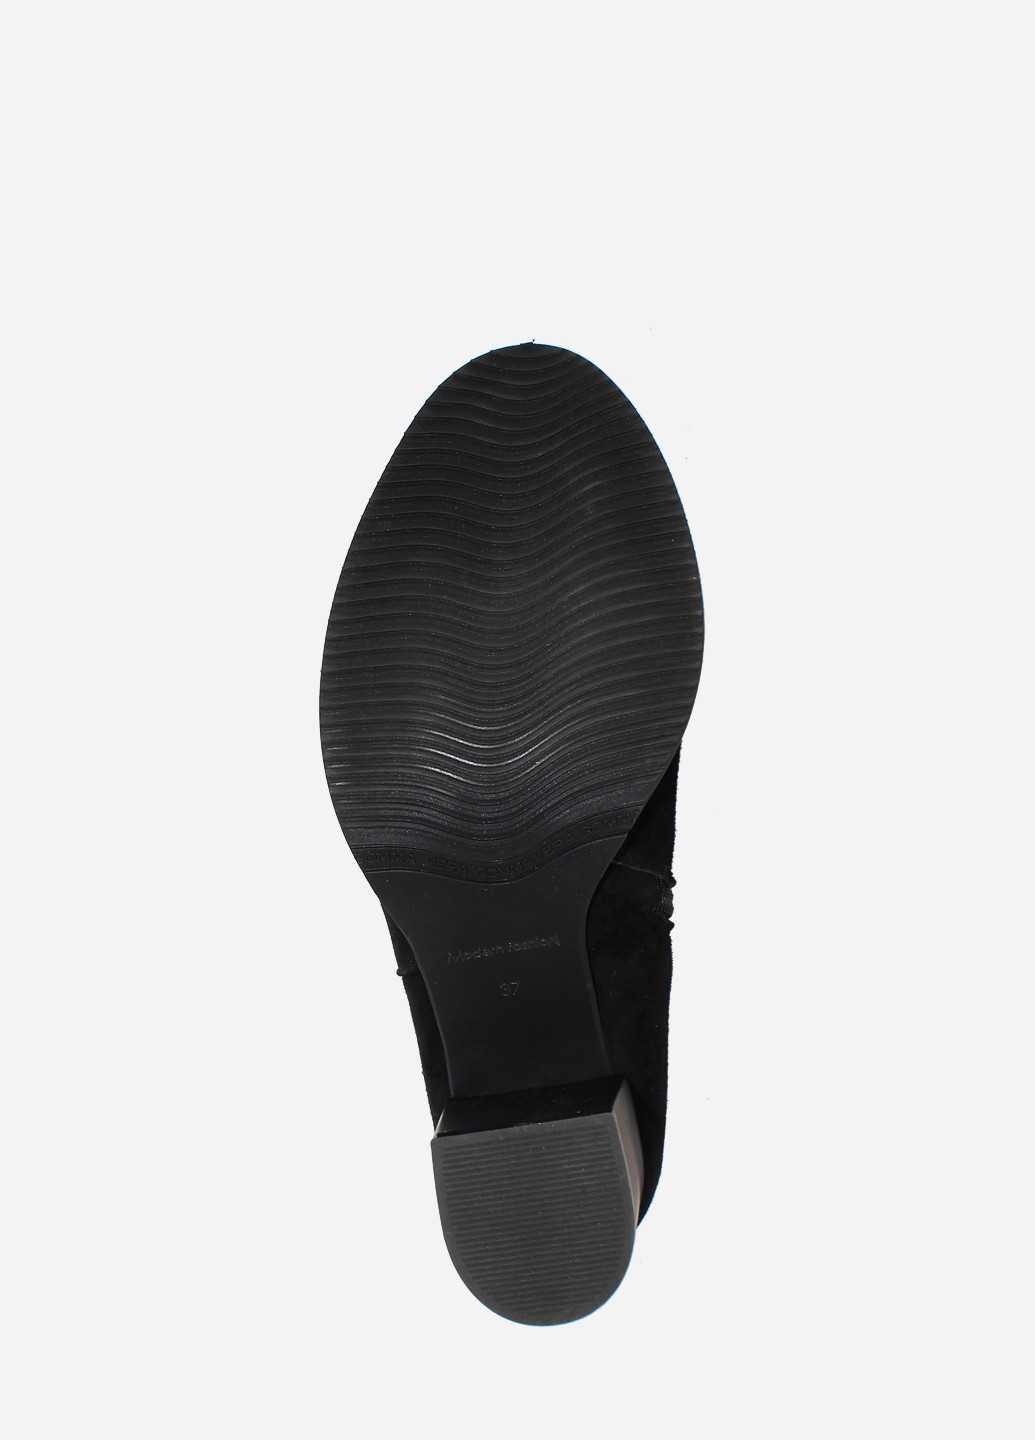 Осенние ботинки re633-11 черный Emilio из натуральной замши